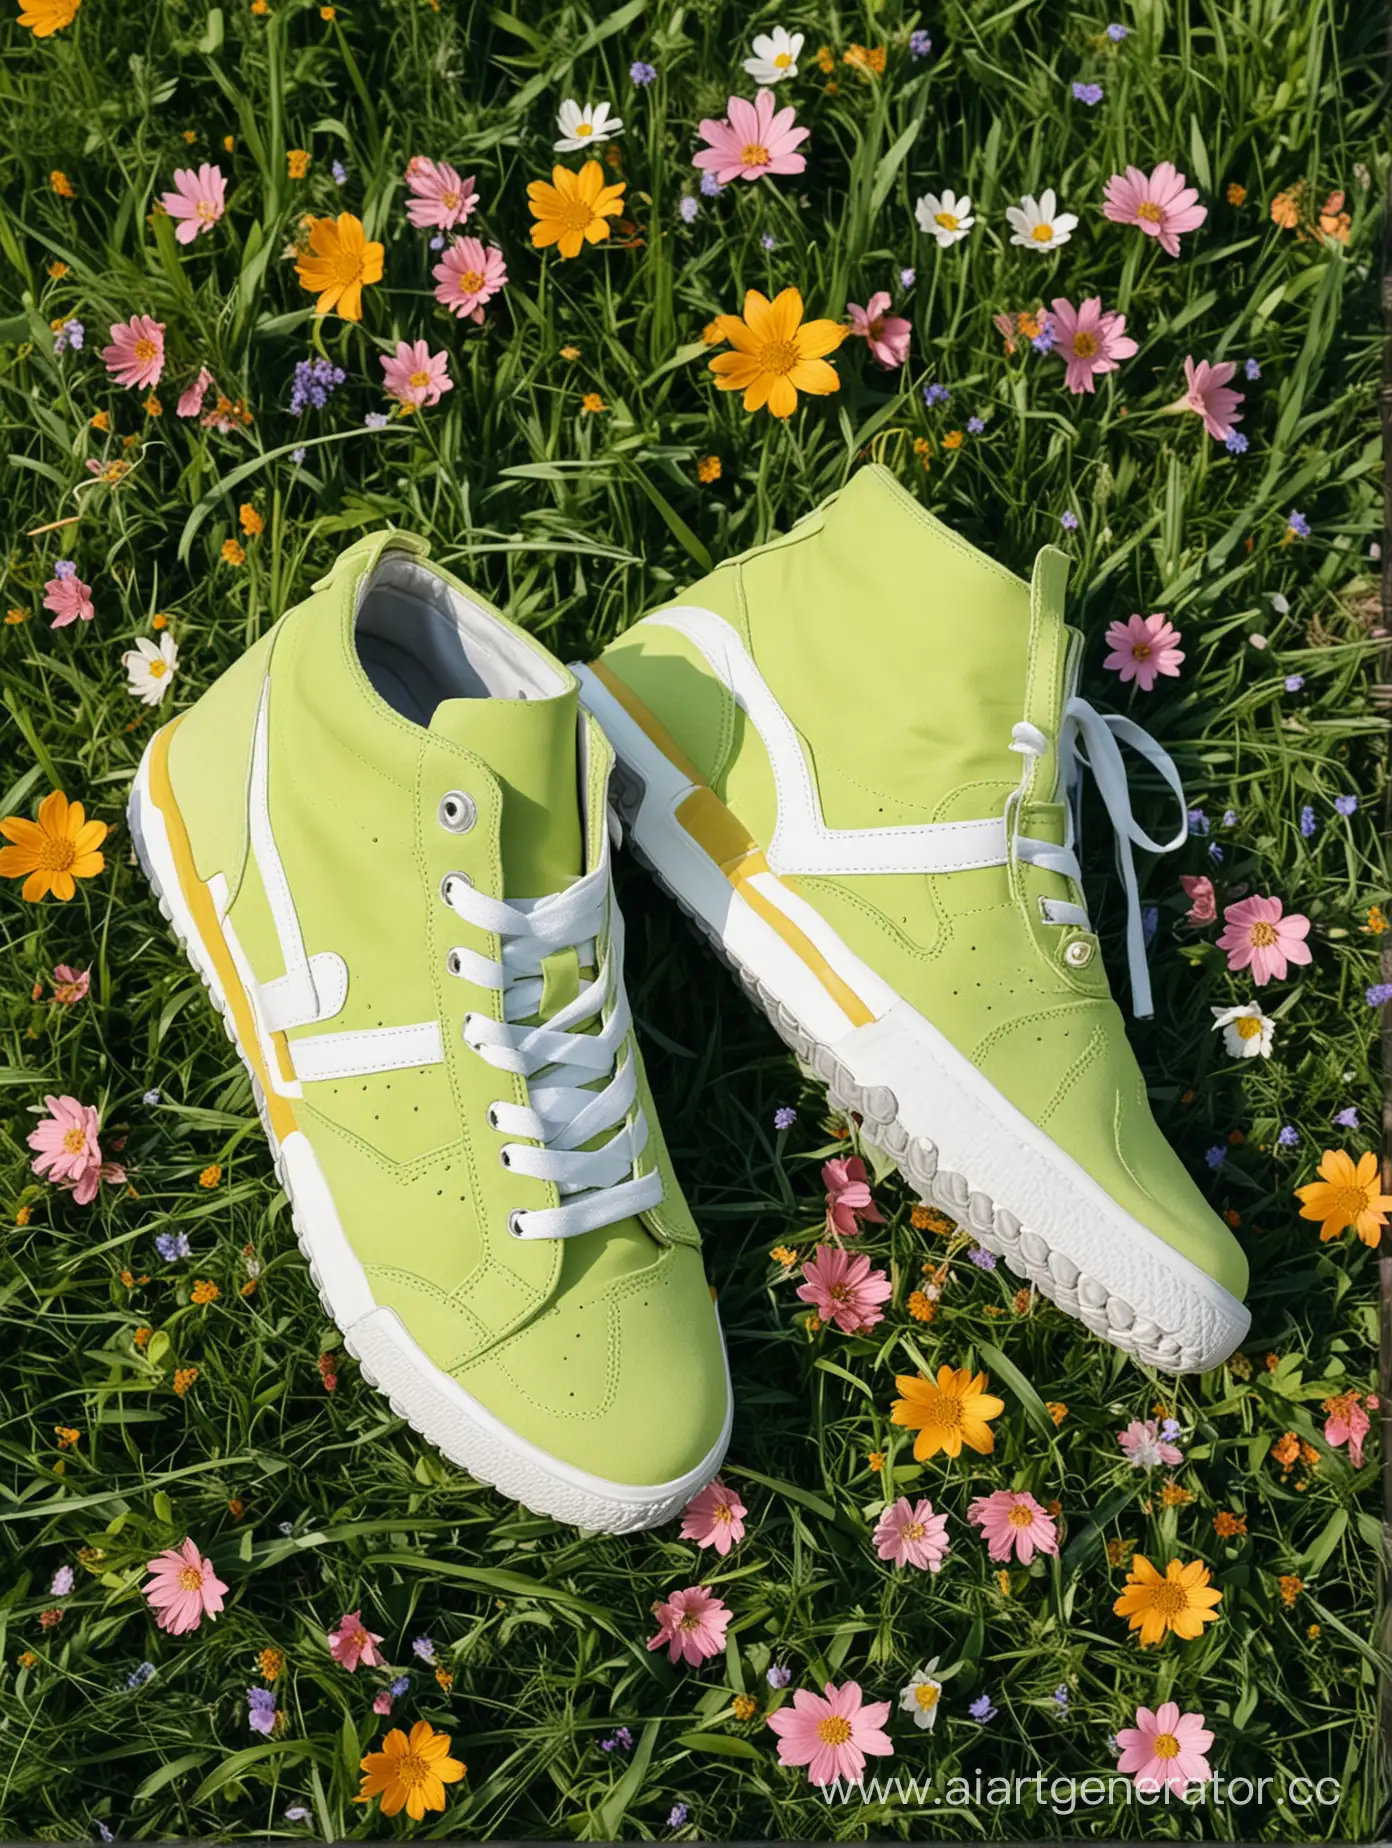 яркие современные кроссовки в траве с цветами, снизу на картинке